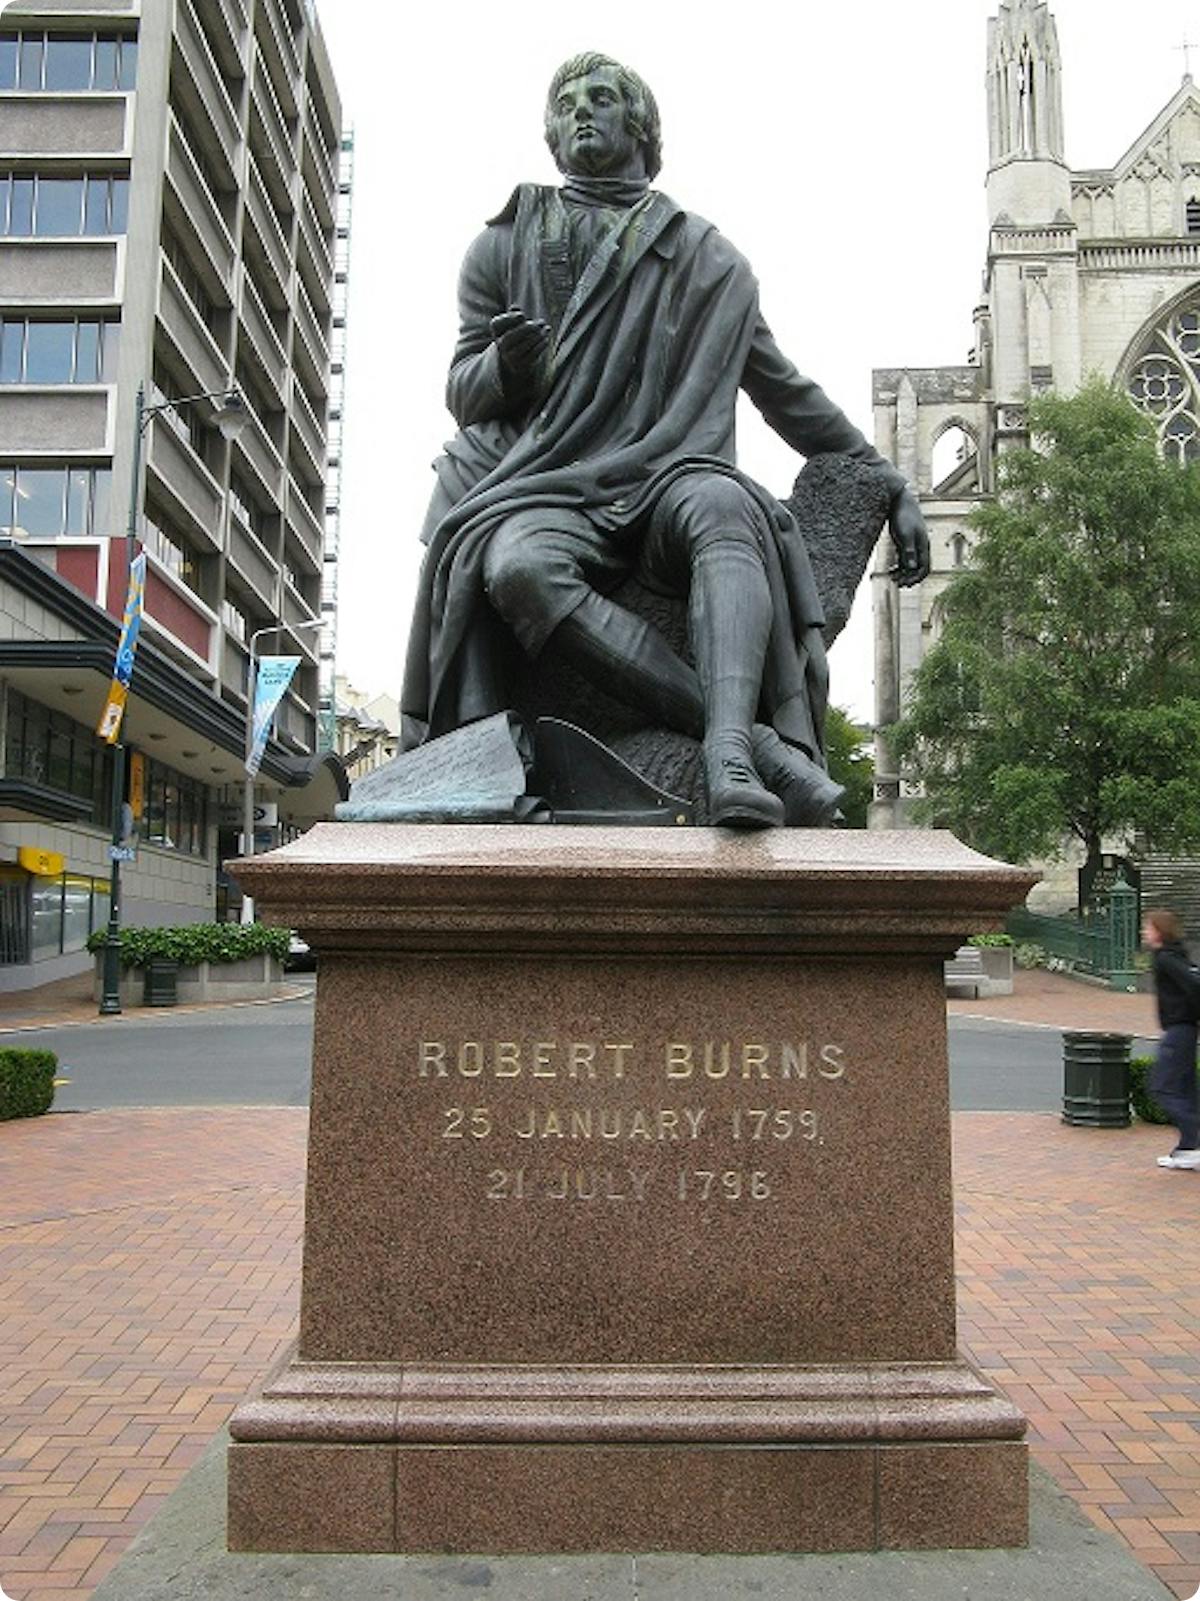 Robert Burns Statue, Dunedin, New Zealand.